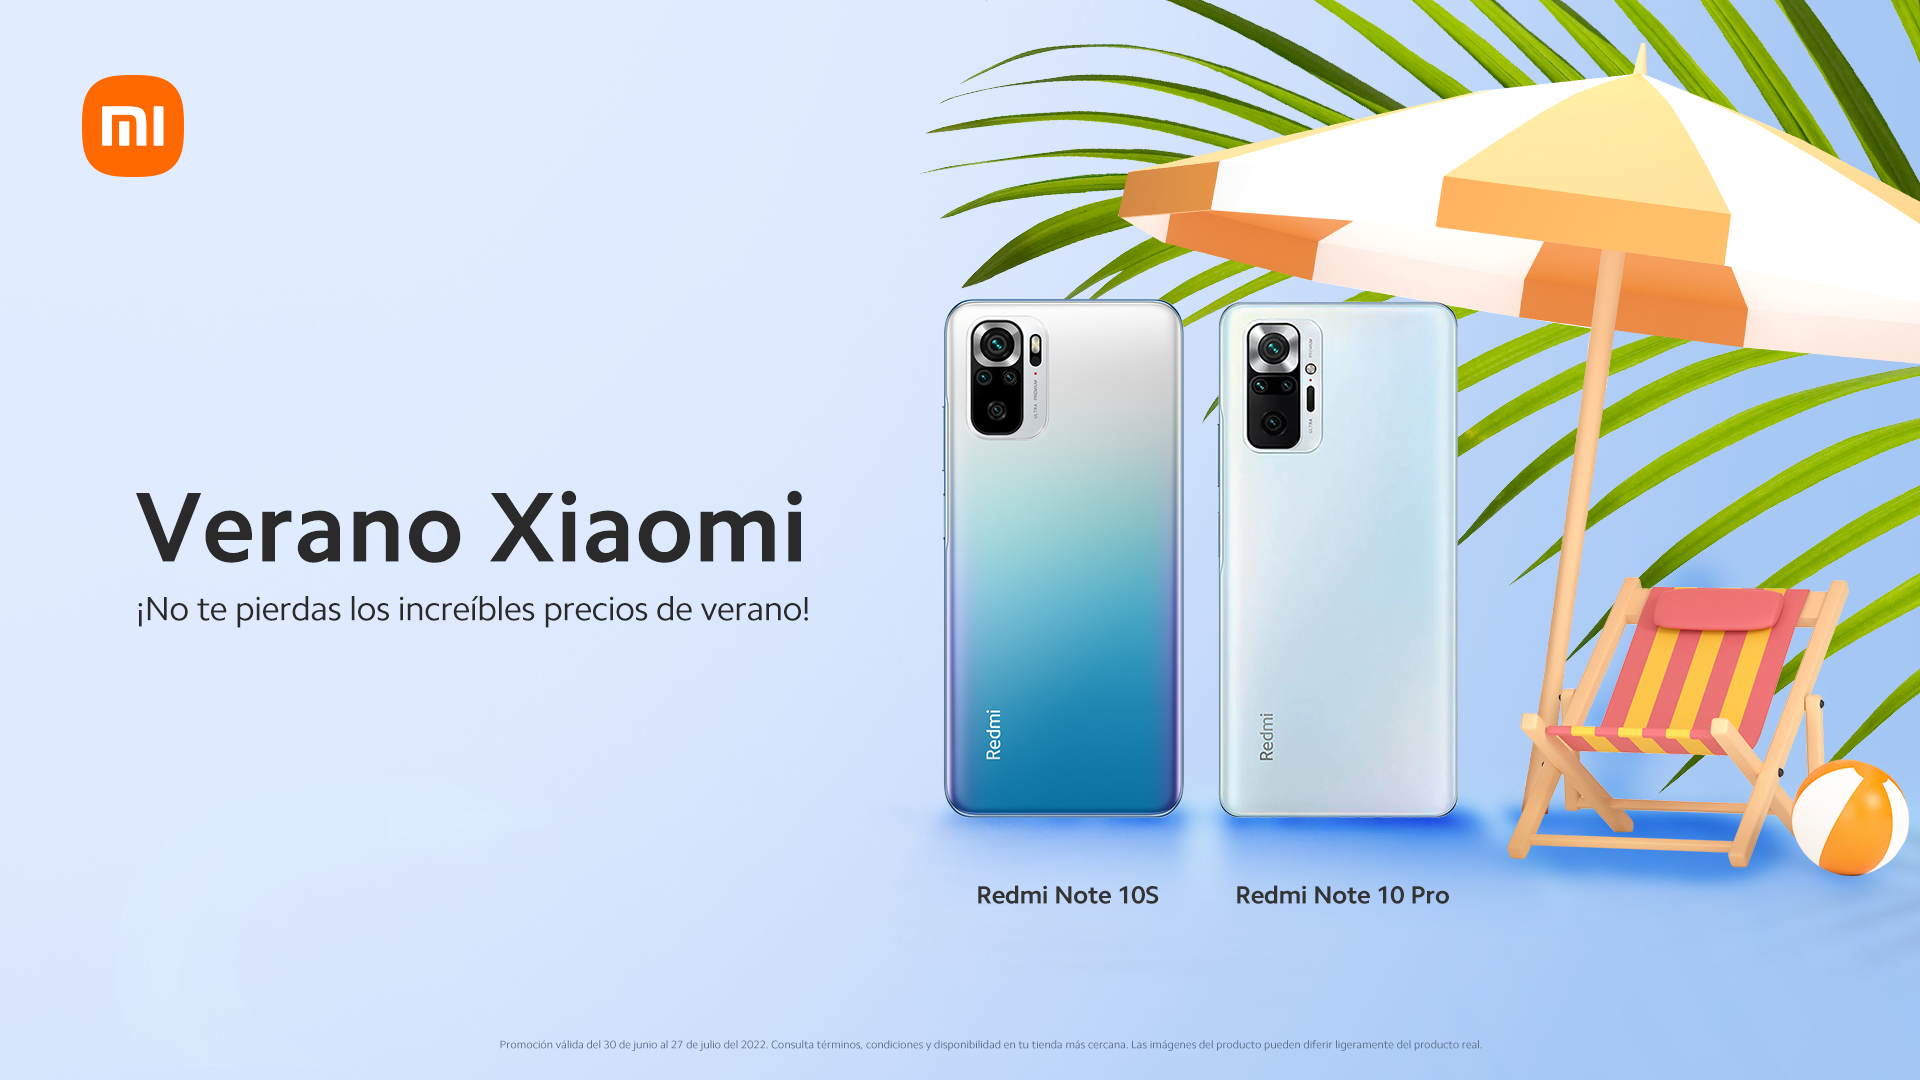 «Increíbles precios de verano que Xiaomi trae para julio»